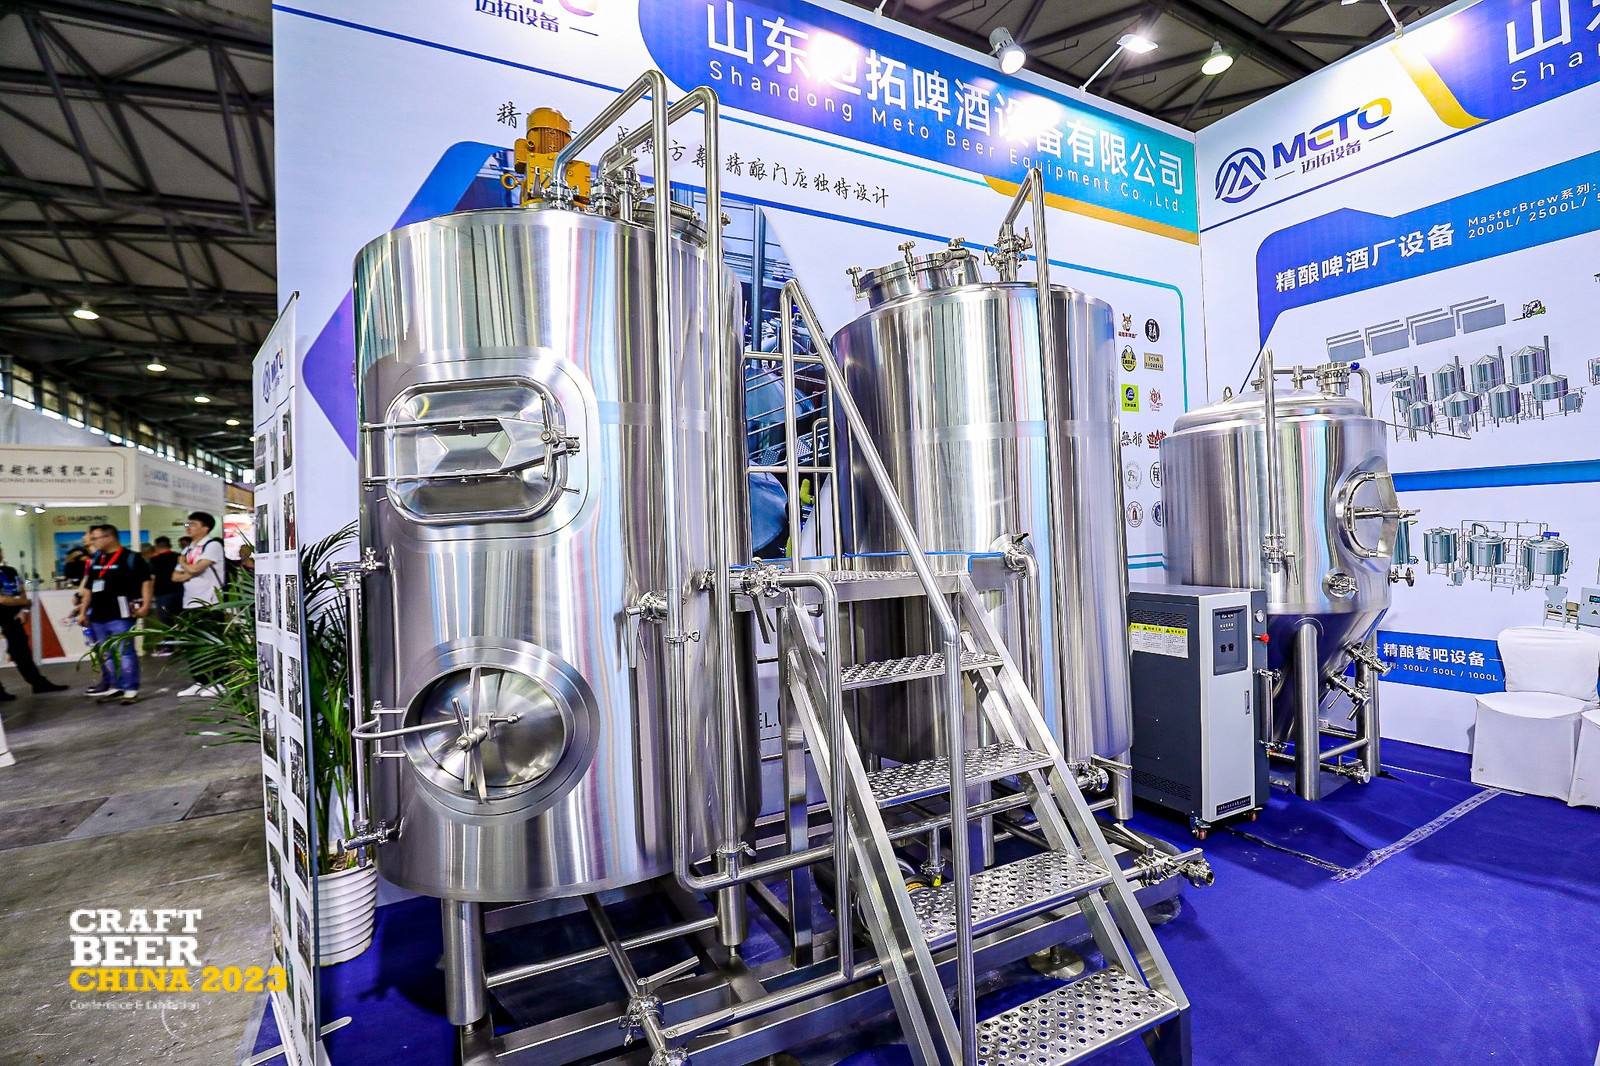 亚洲国际精酿啤酒会议暨展览会(CBCE 2023)